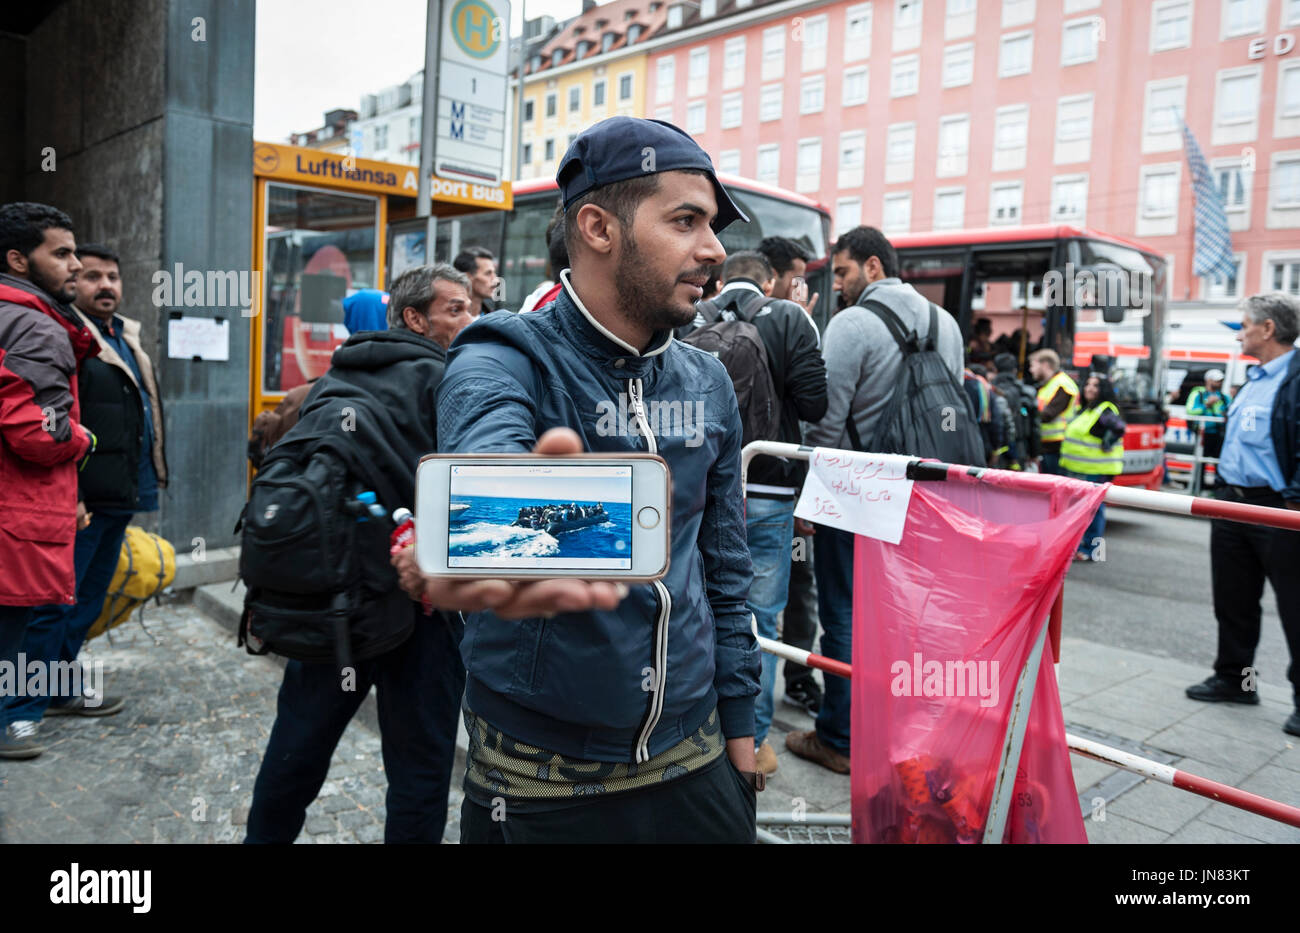 Monaco di Baviera, Germania - 7 Settembre 2015: rifugiato dall' Afghanistan dimostra le immagini della sua via di fuga su una barca. Molti rifugiati fuggono sul mare in Europa Foto Stock